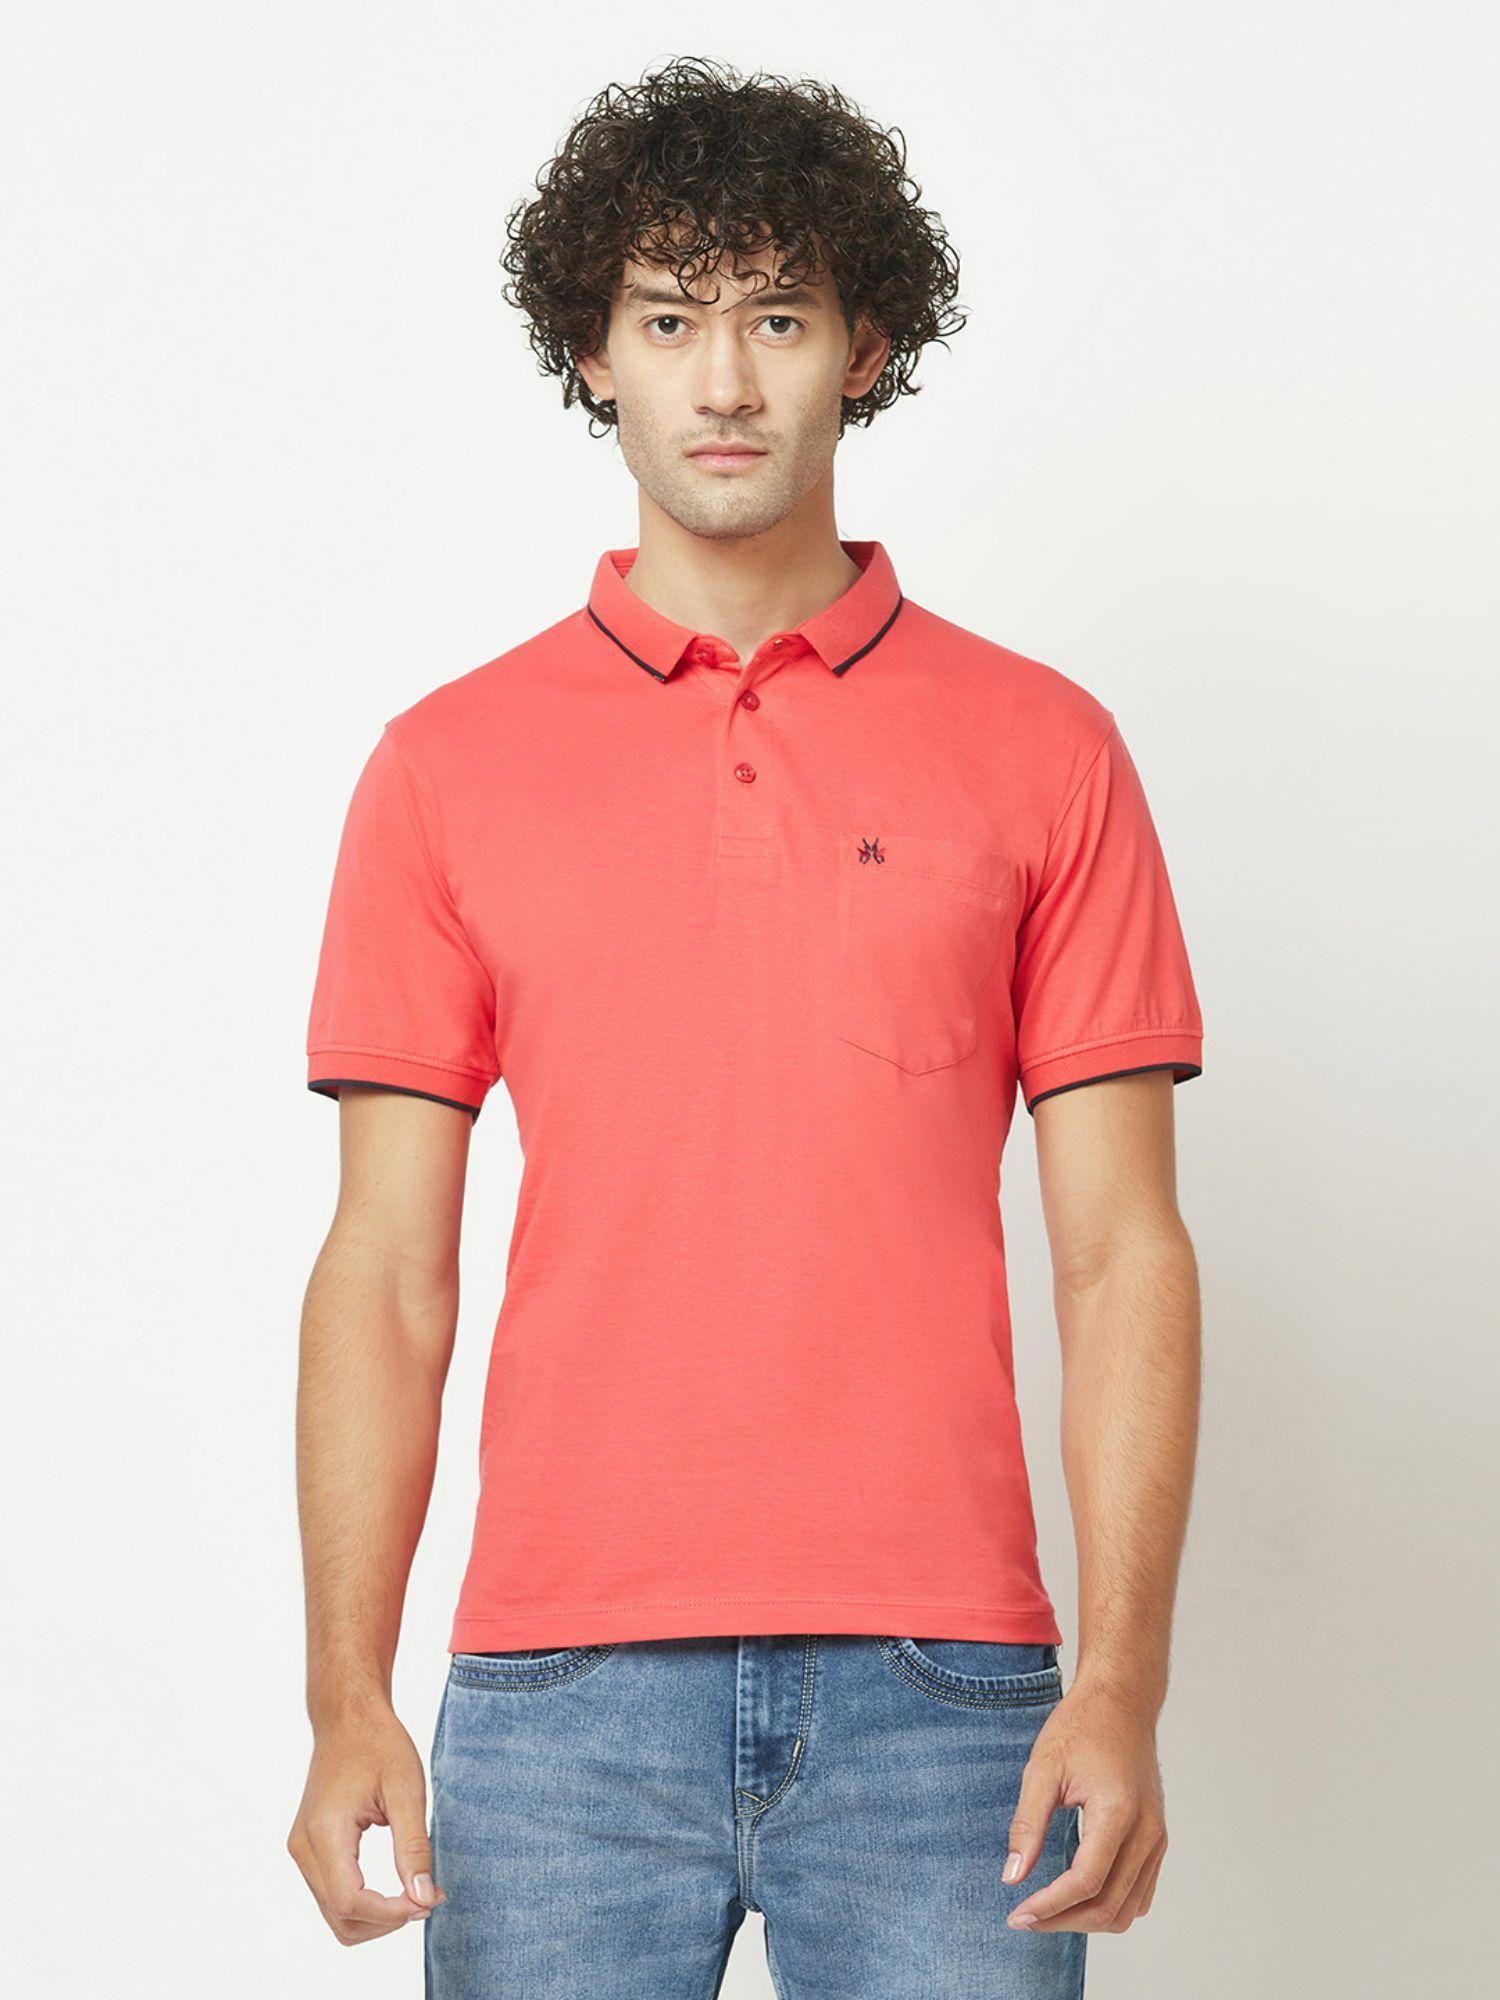 mens plain coral polo t-shirt